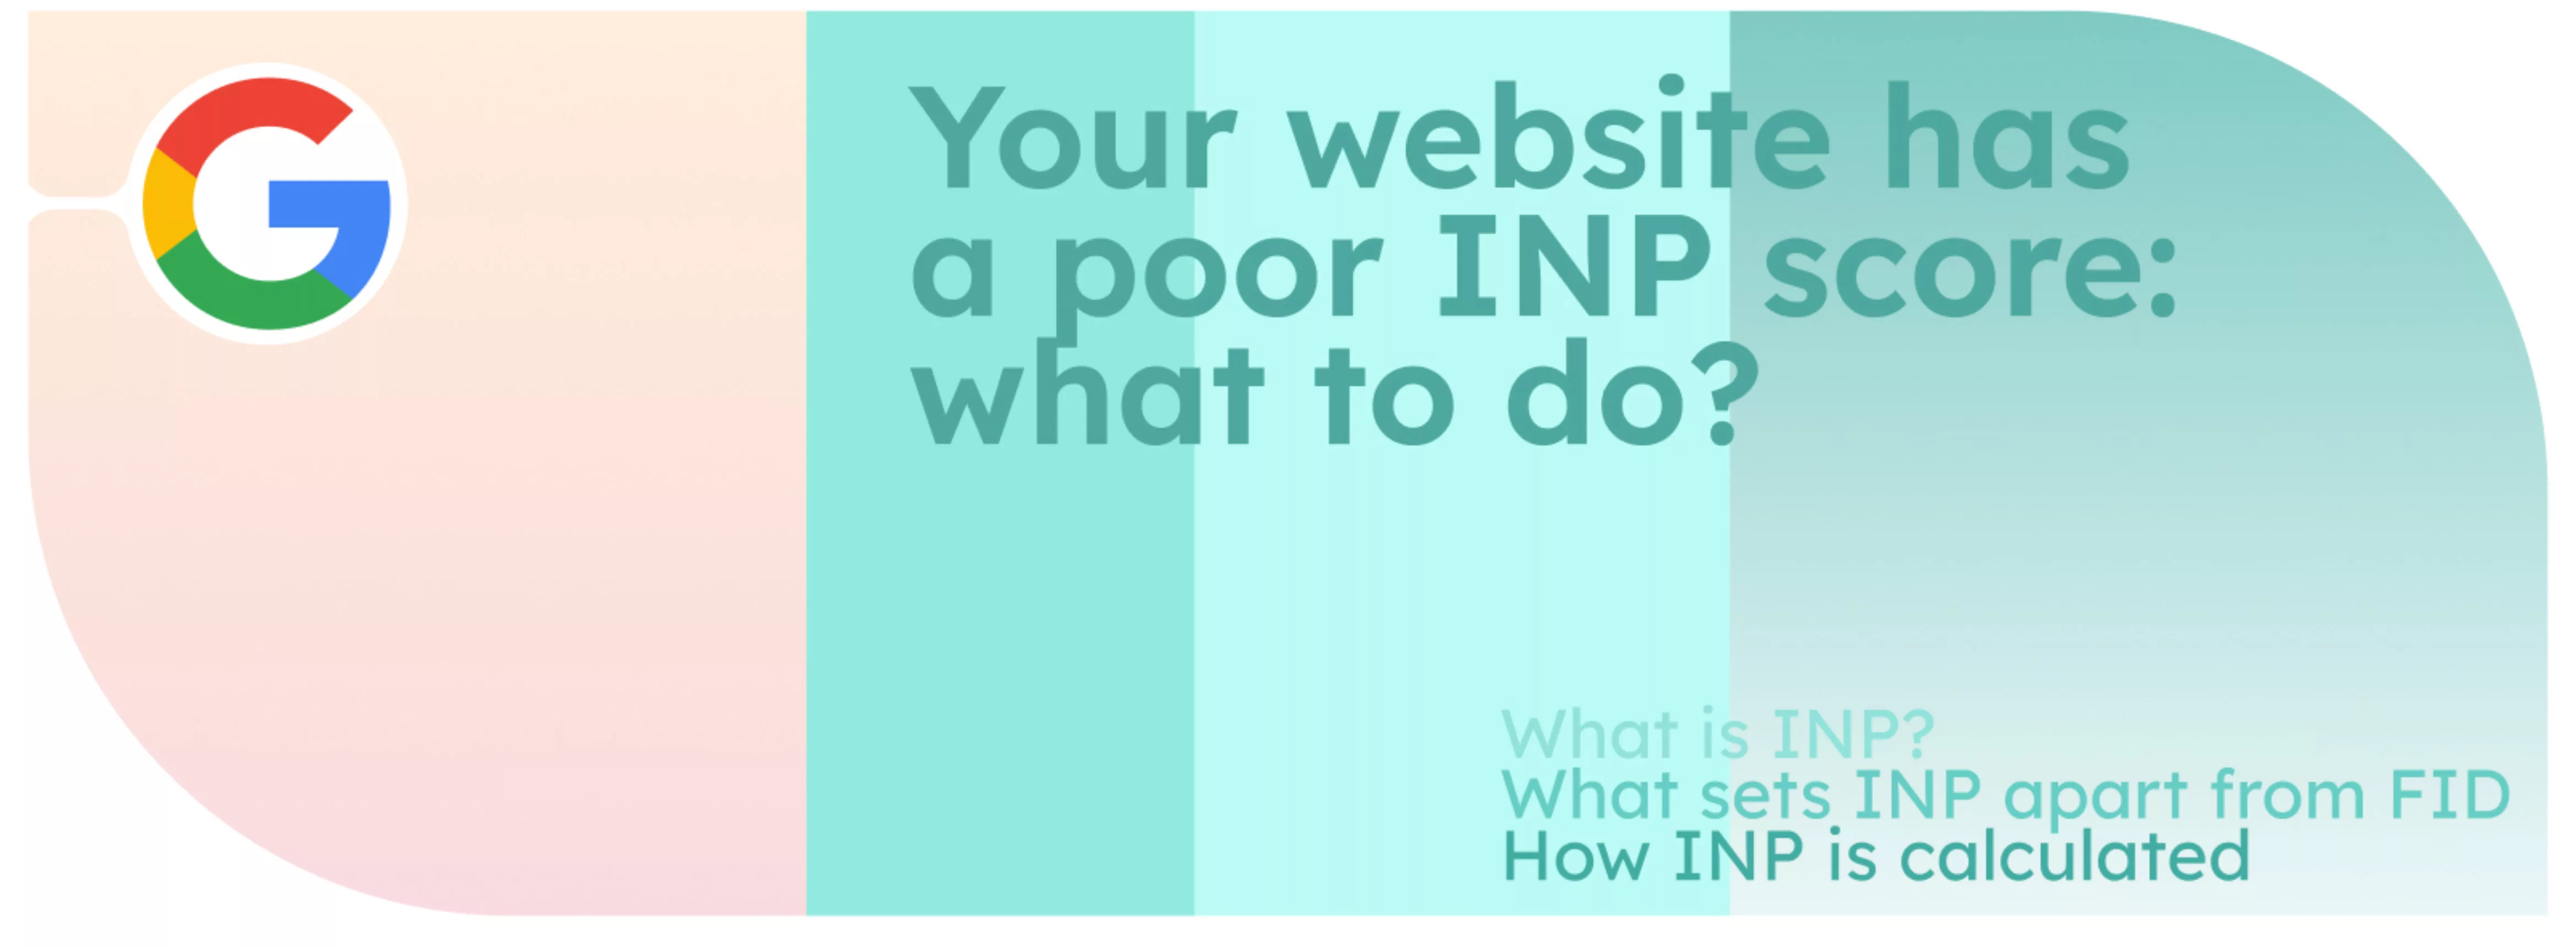 Ihre Website hat eine schlechte INP-Bewertung: Was ist zu tun?